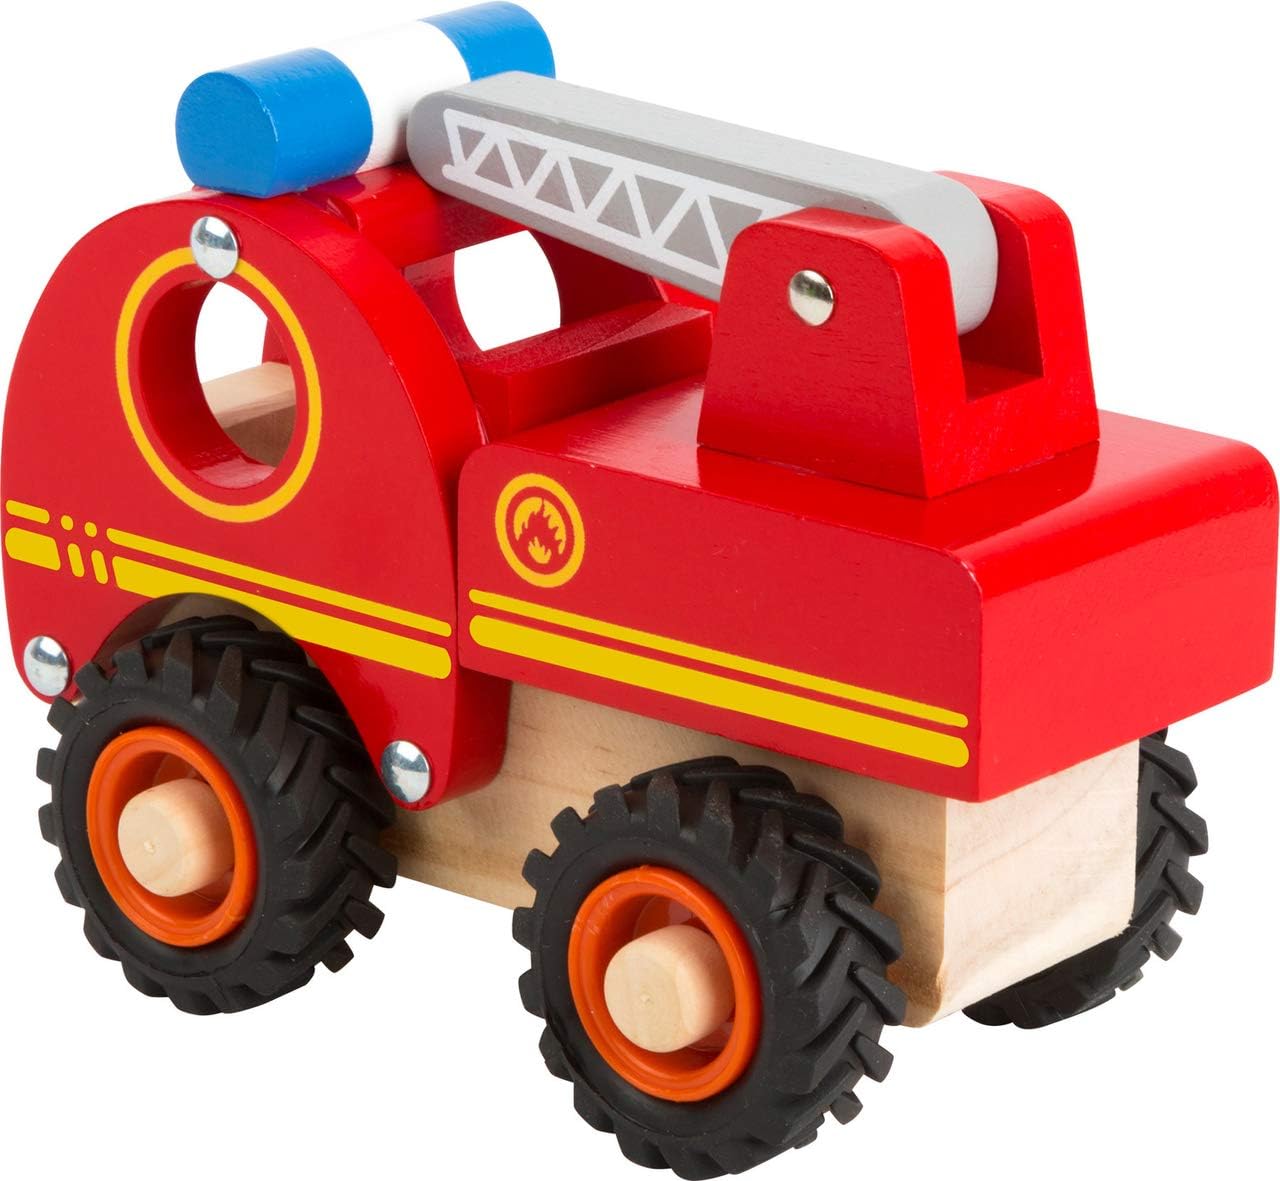 Camion dei Pompieri in legno - Small Foot - Art. 11075